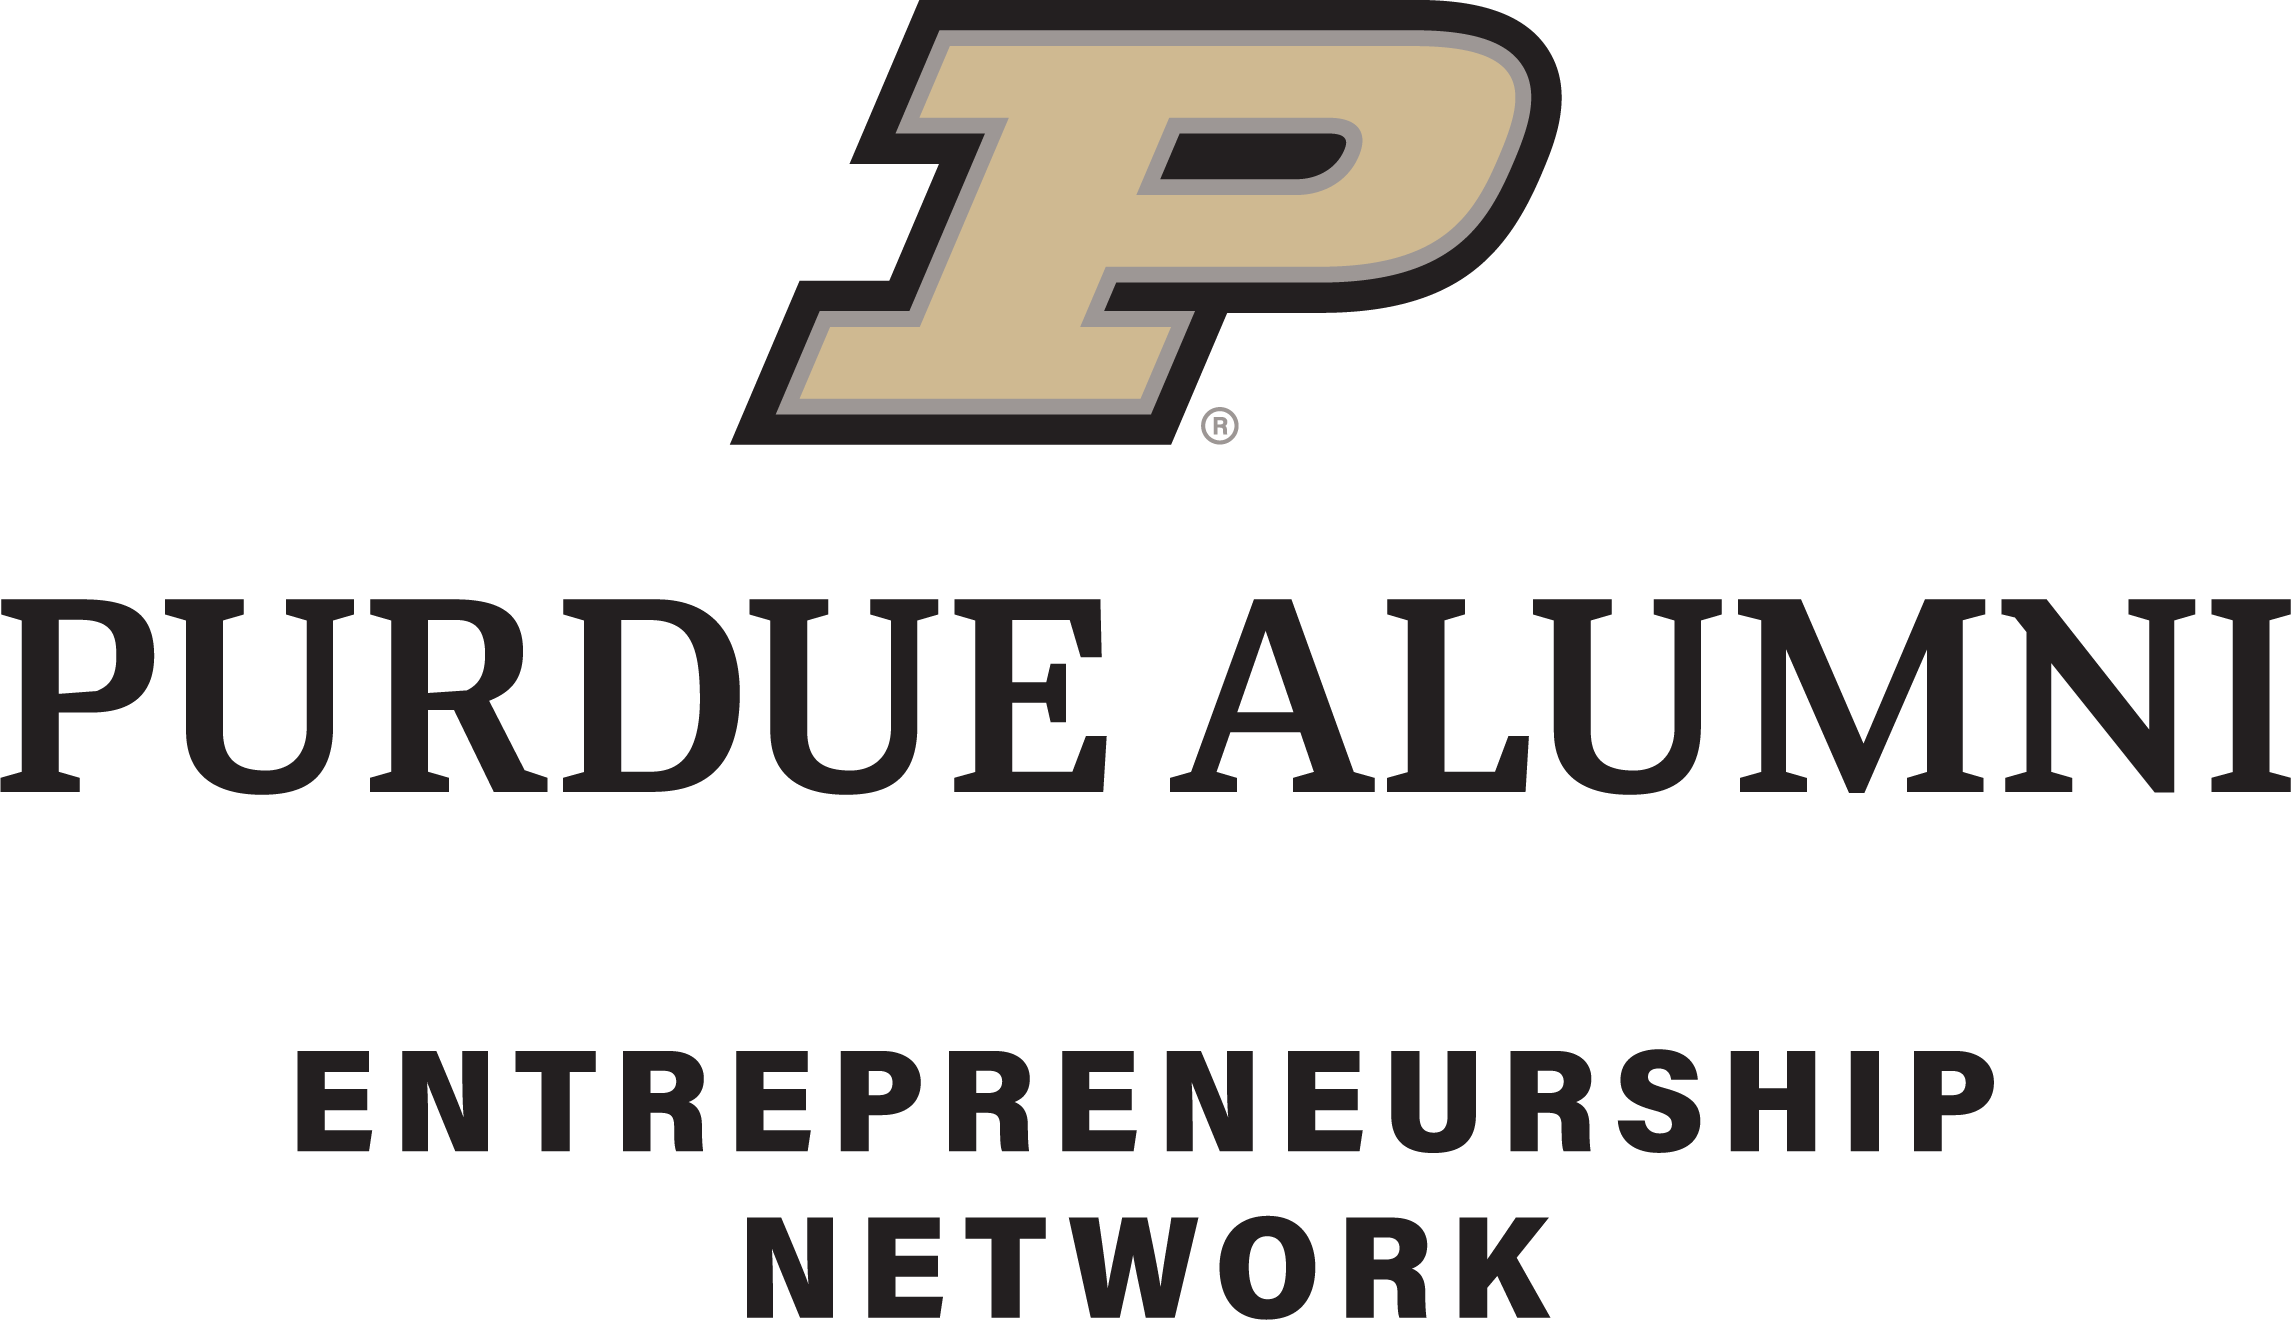 Purdue Alumni Entrepreneurship Network